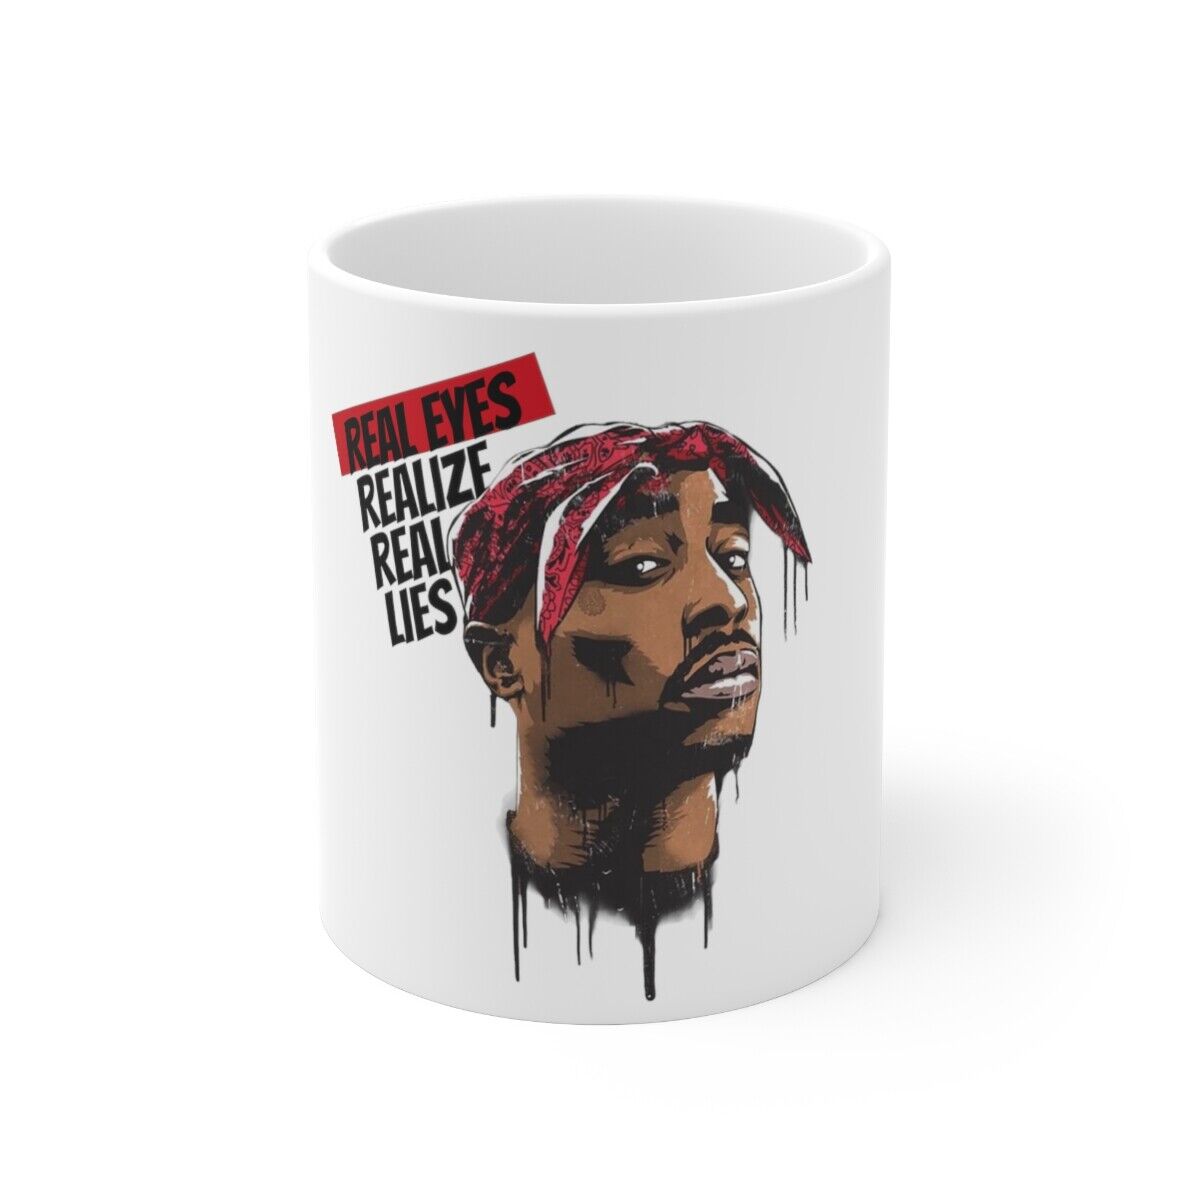 Hip Hop Legends 2pac 90s Hip Hop 2Pac Memorabilia Rap Music White Coffee Mug